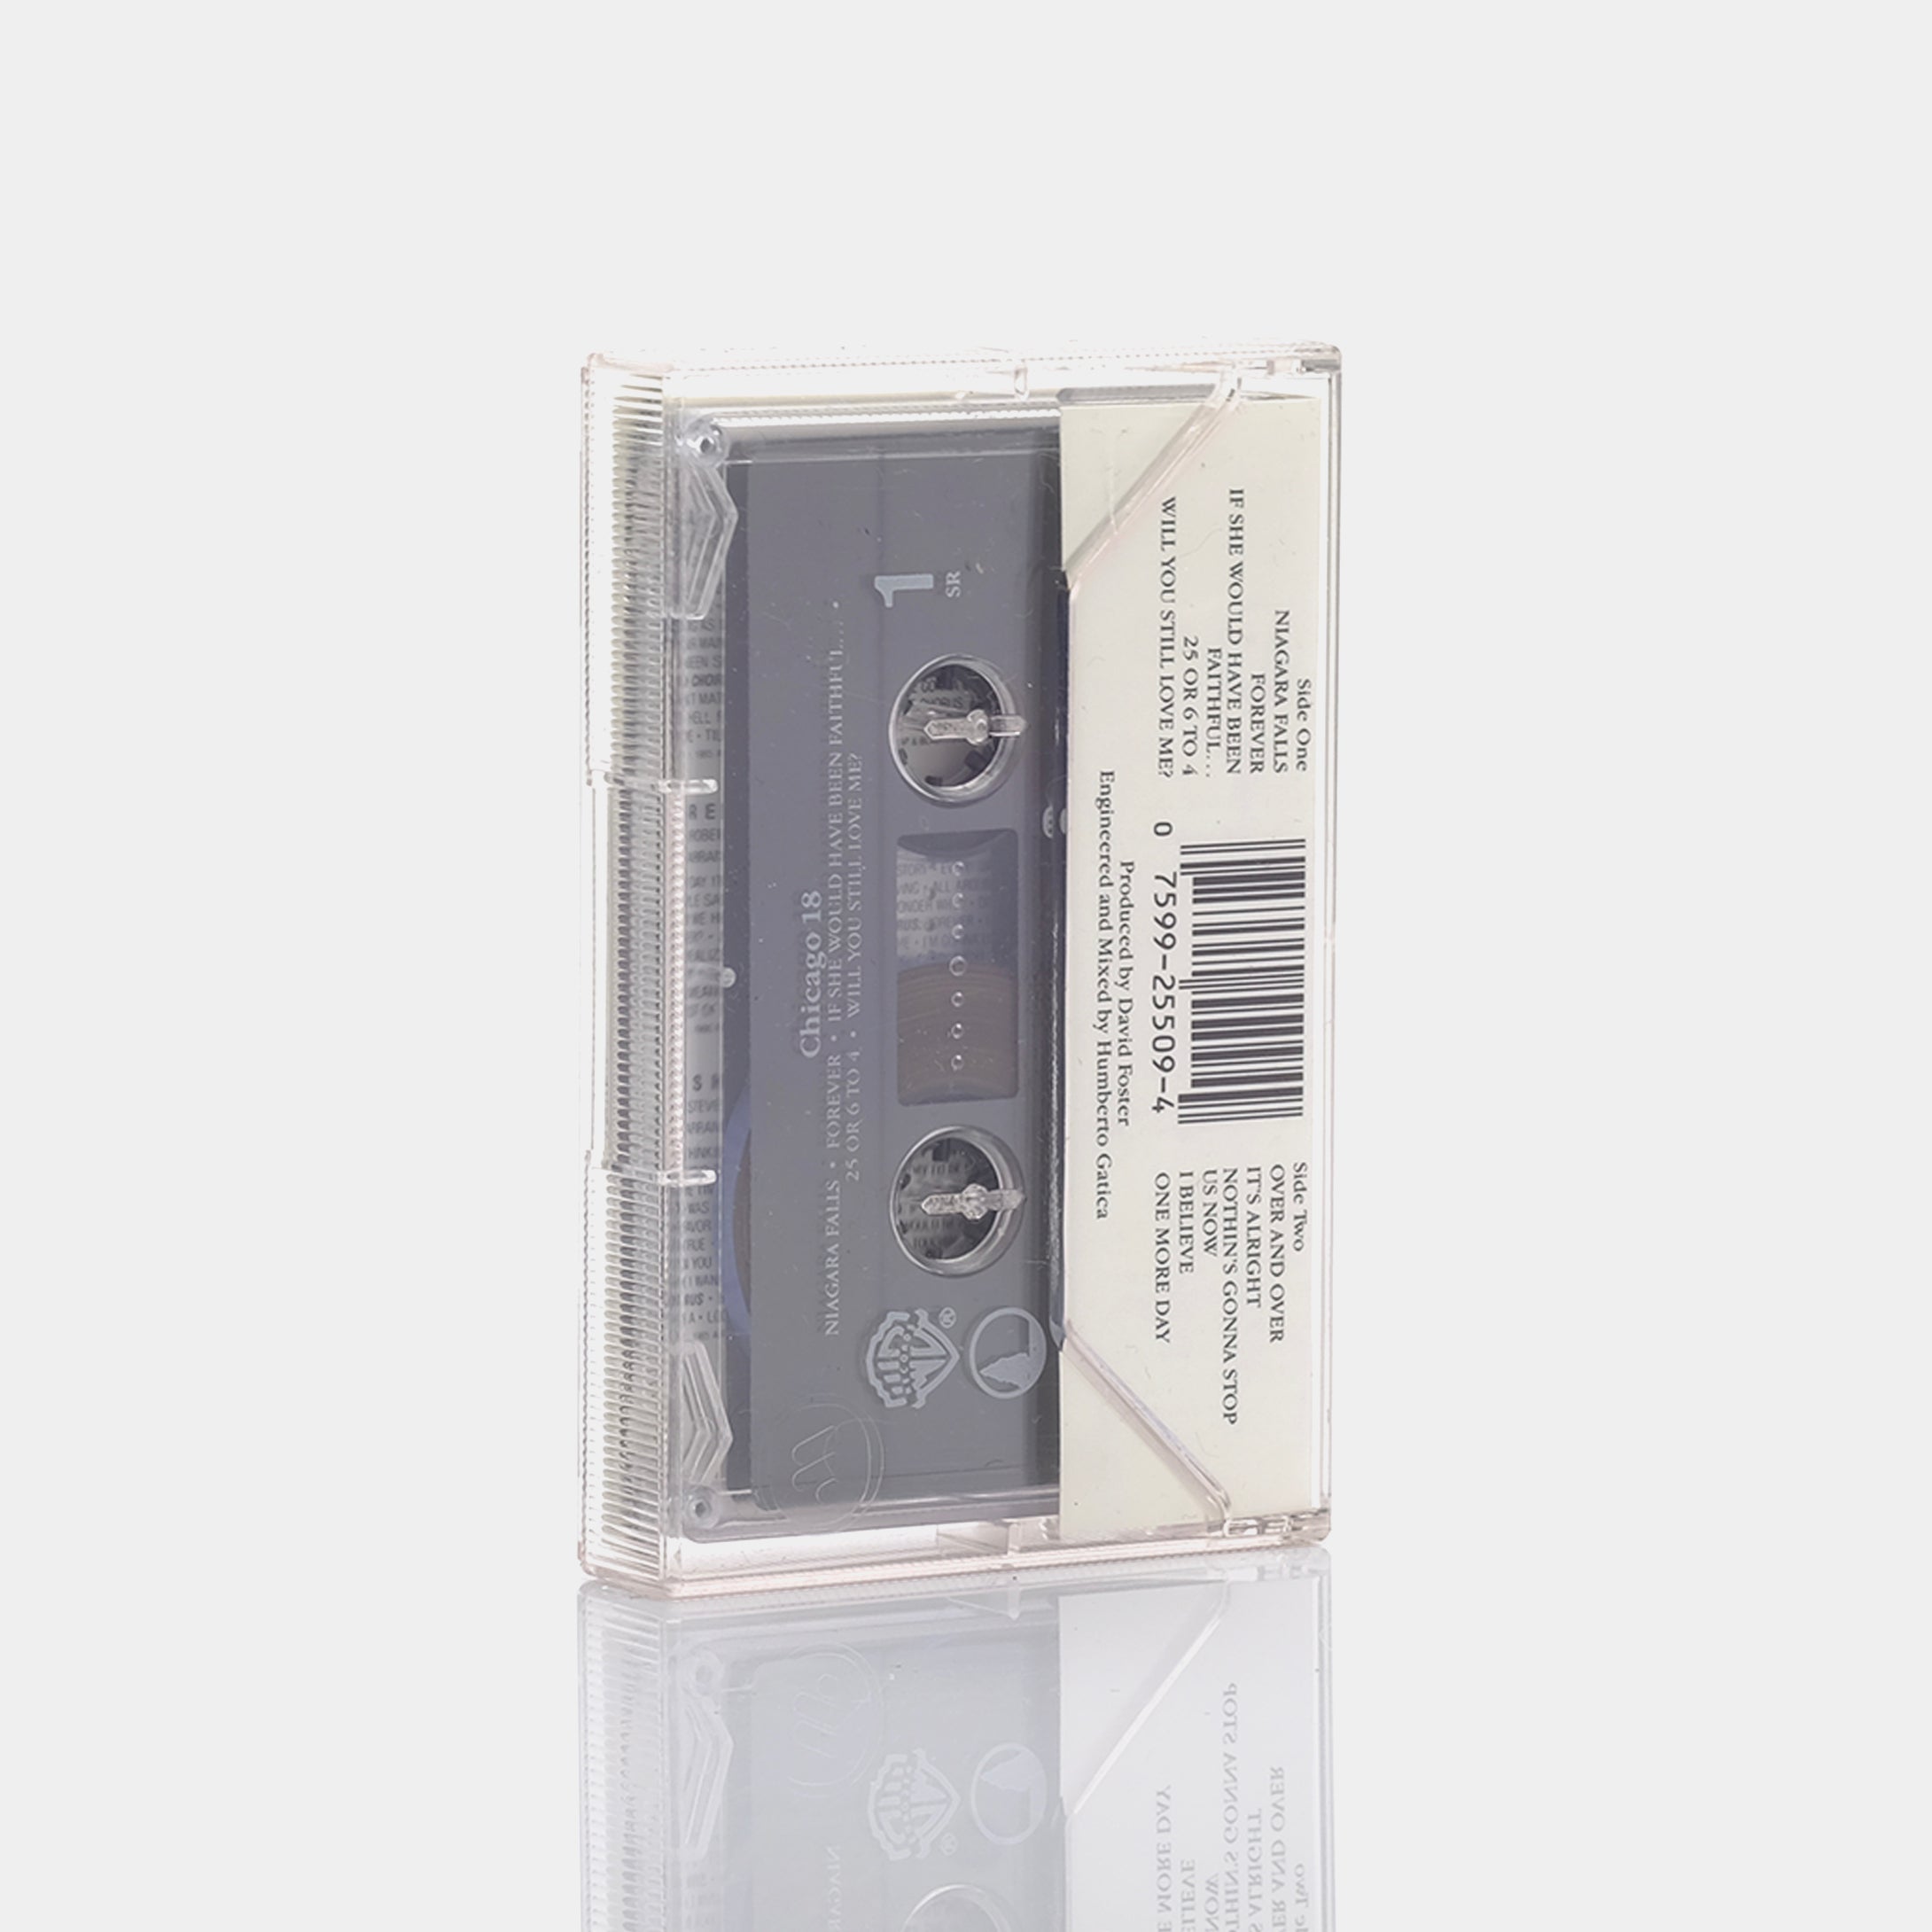 Chicago - Chicago 18 Cassette Tape